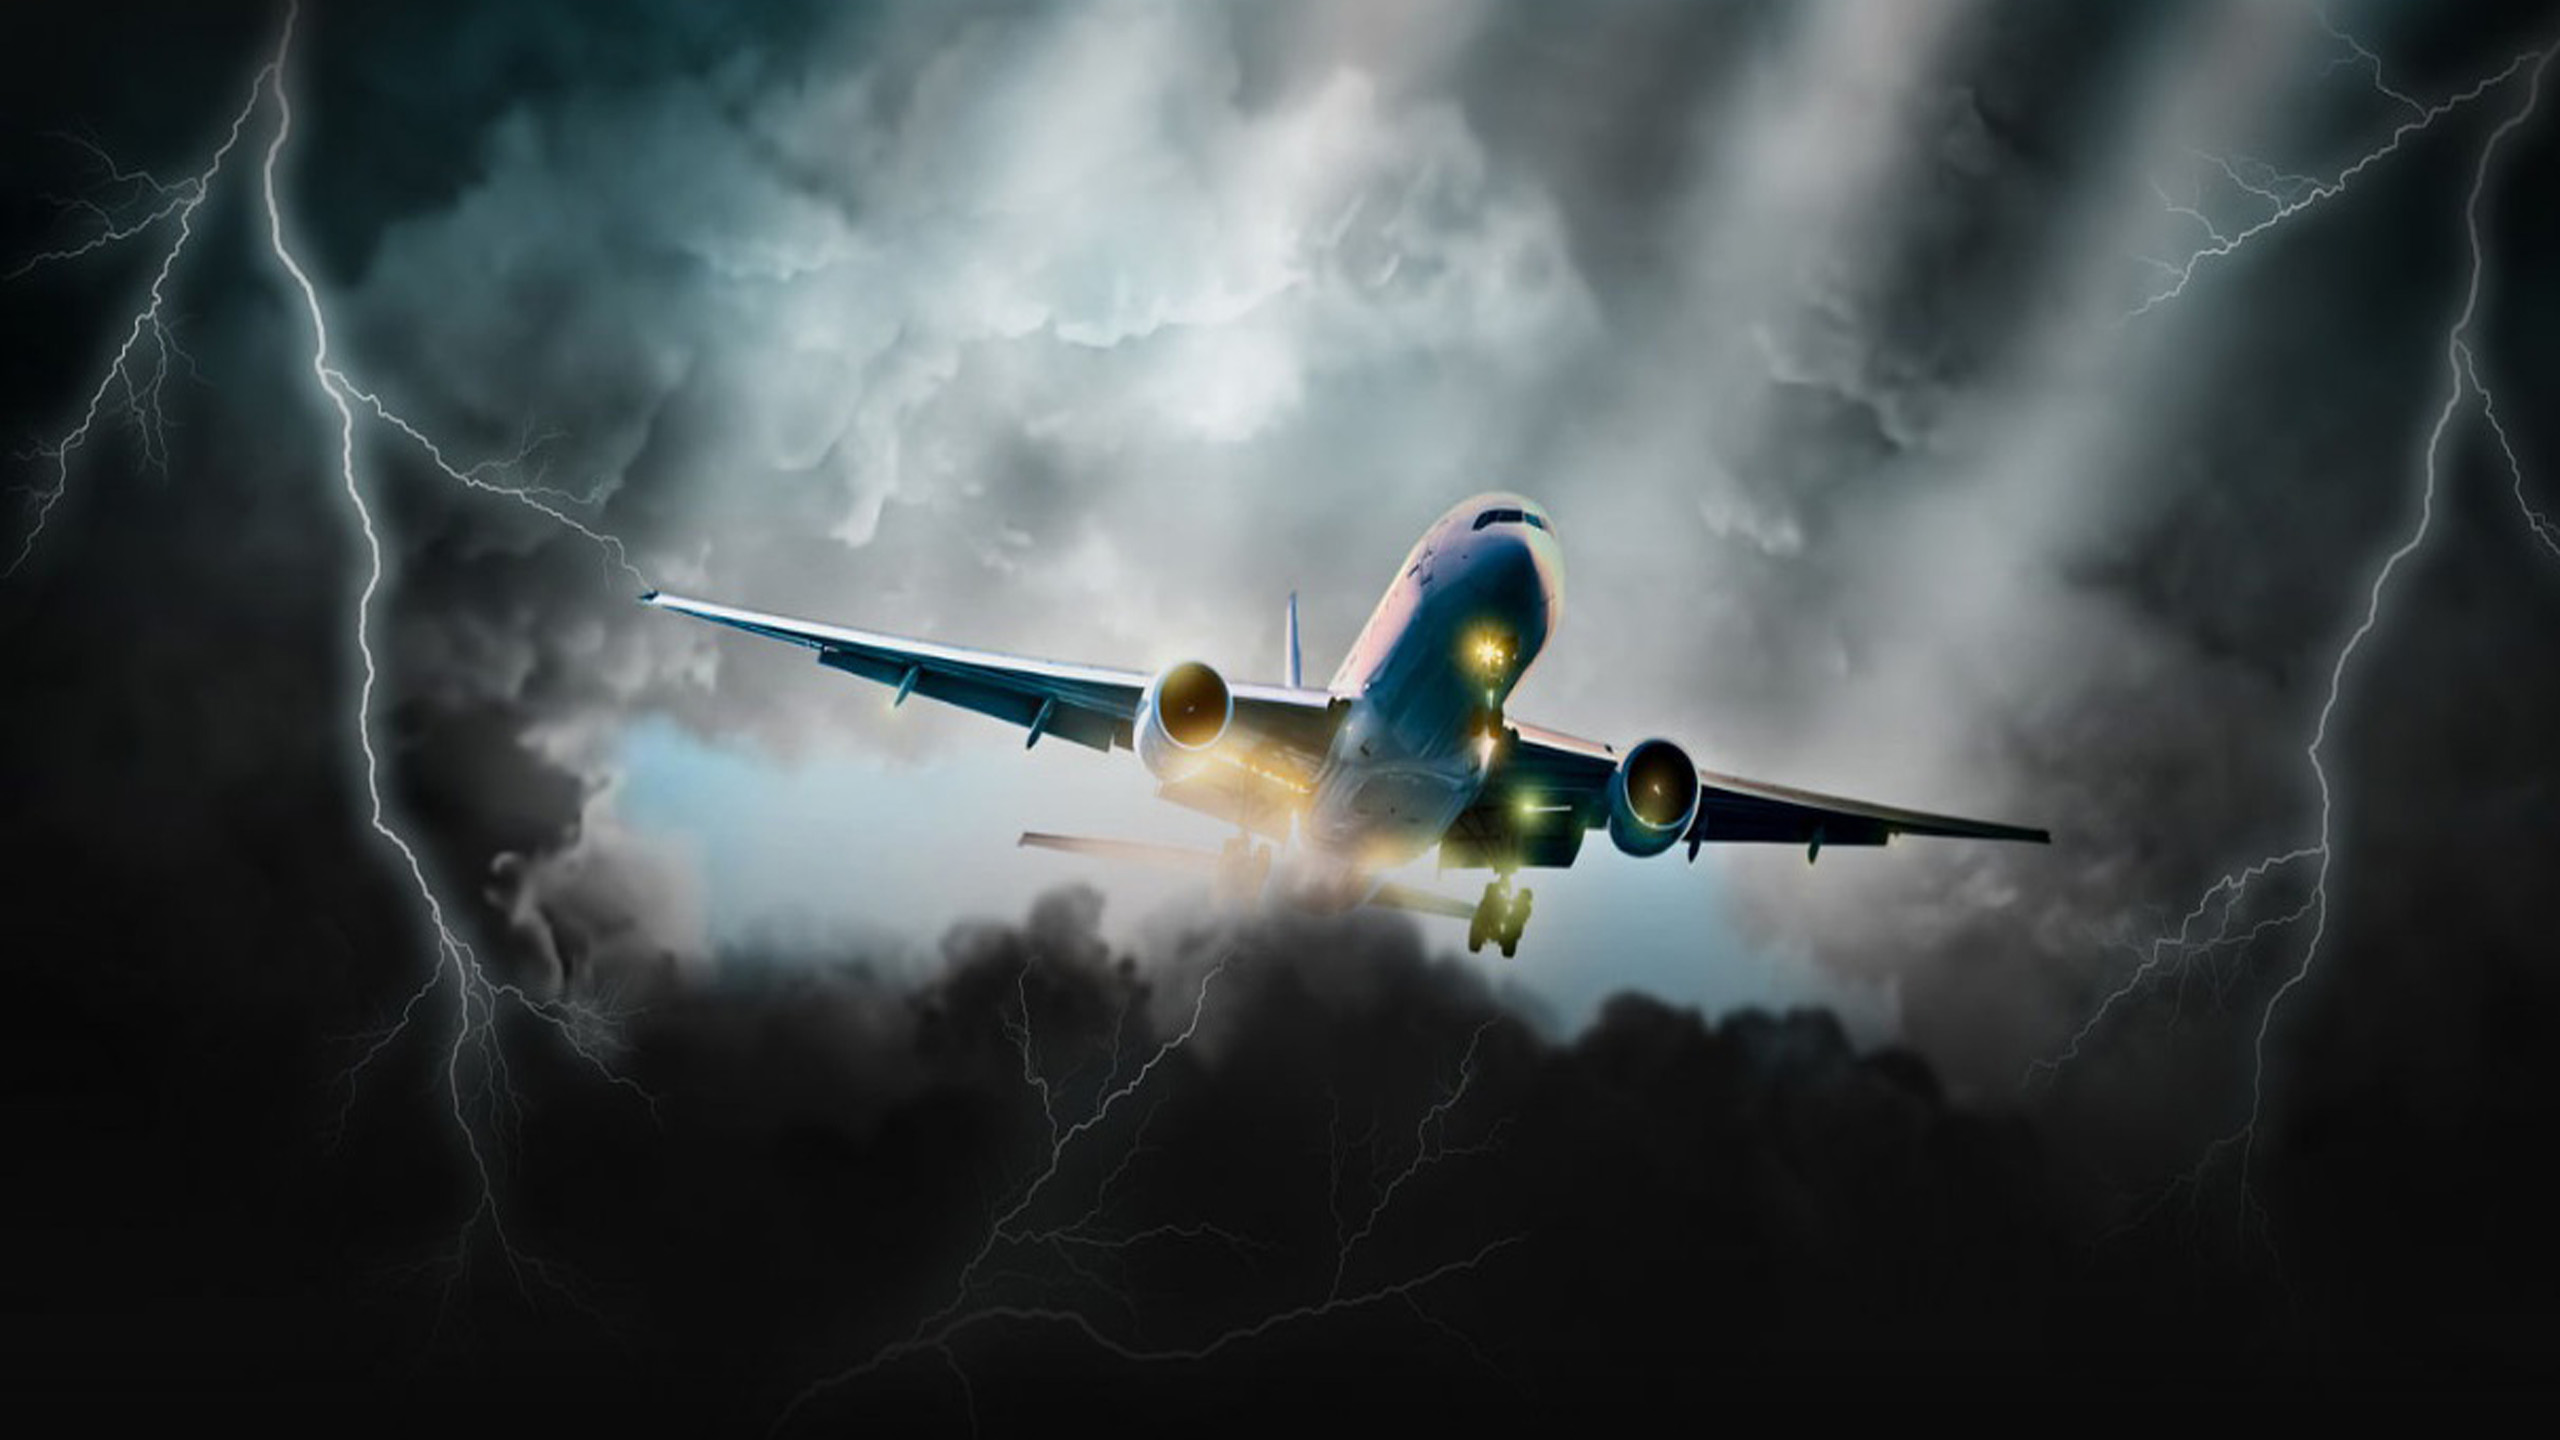 Aviation Dark Storm Clouds, Lightning Art Hd Wallpaper : Wallpapers13.com